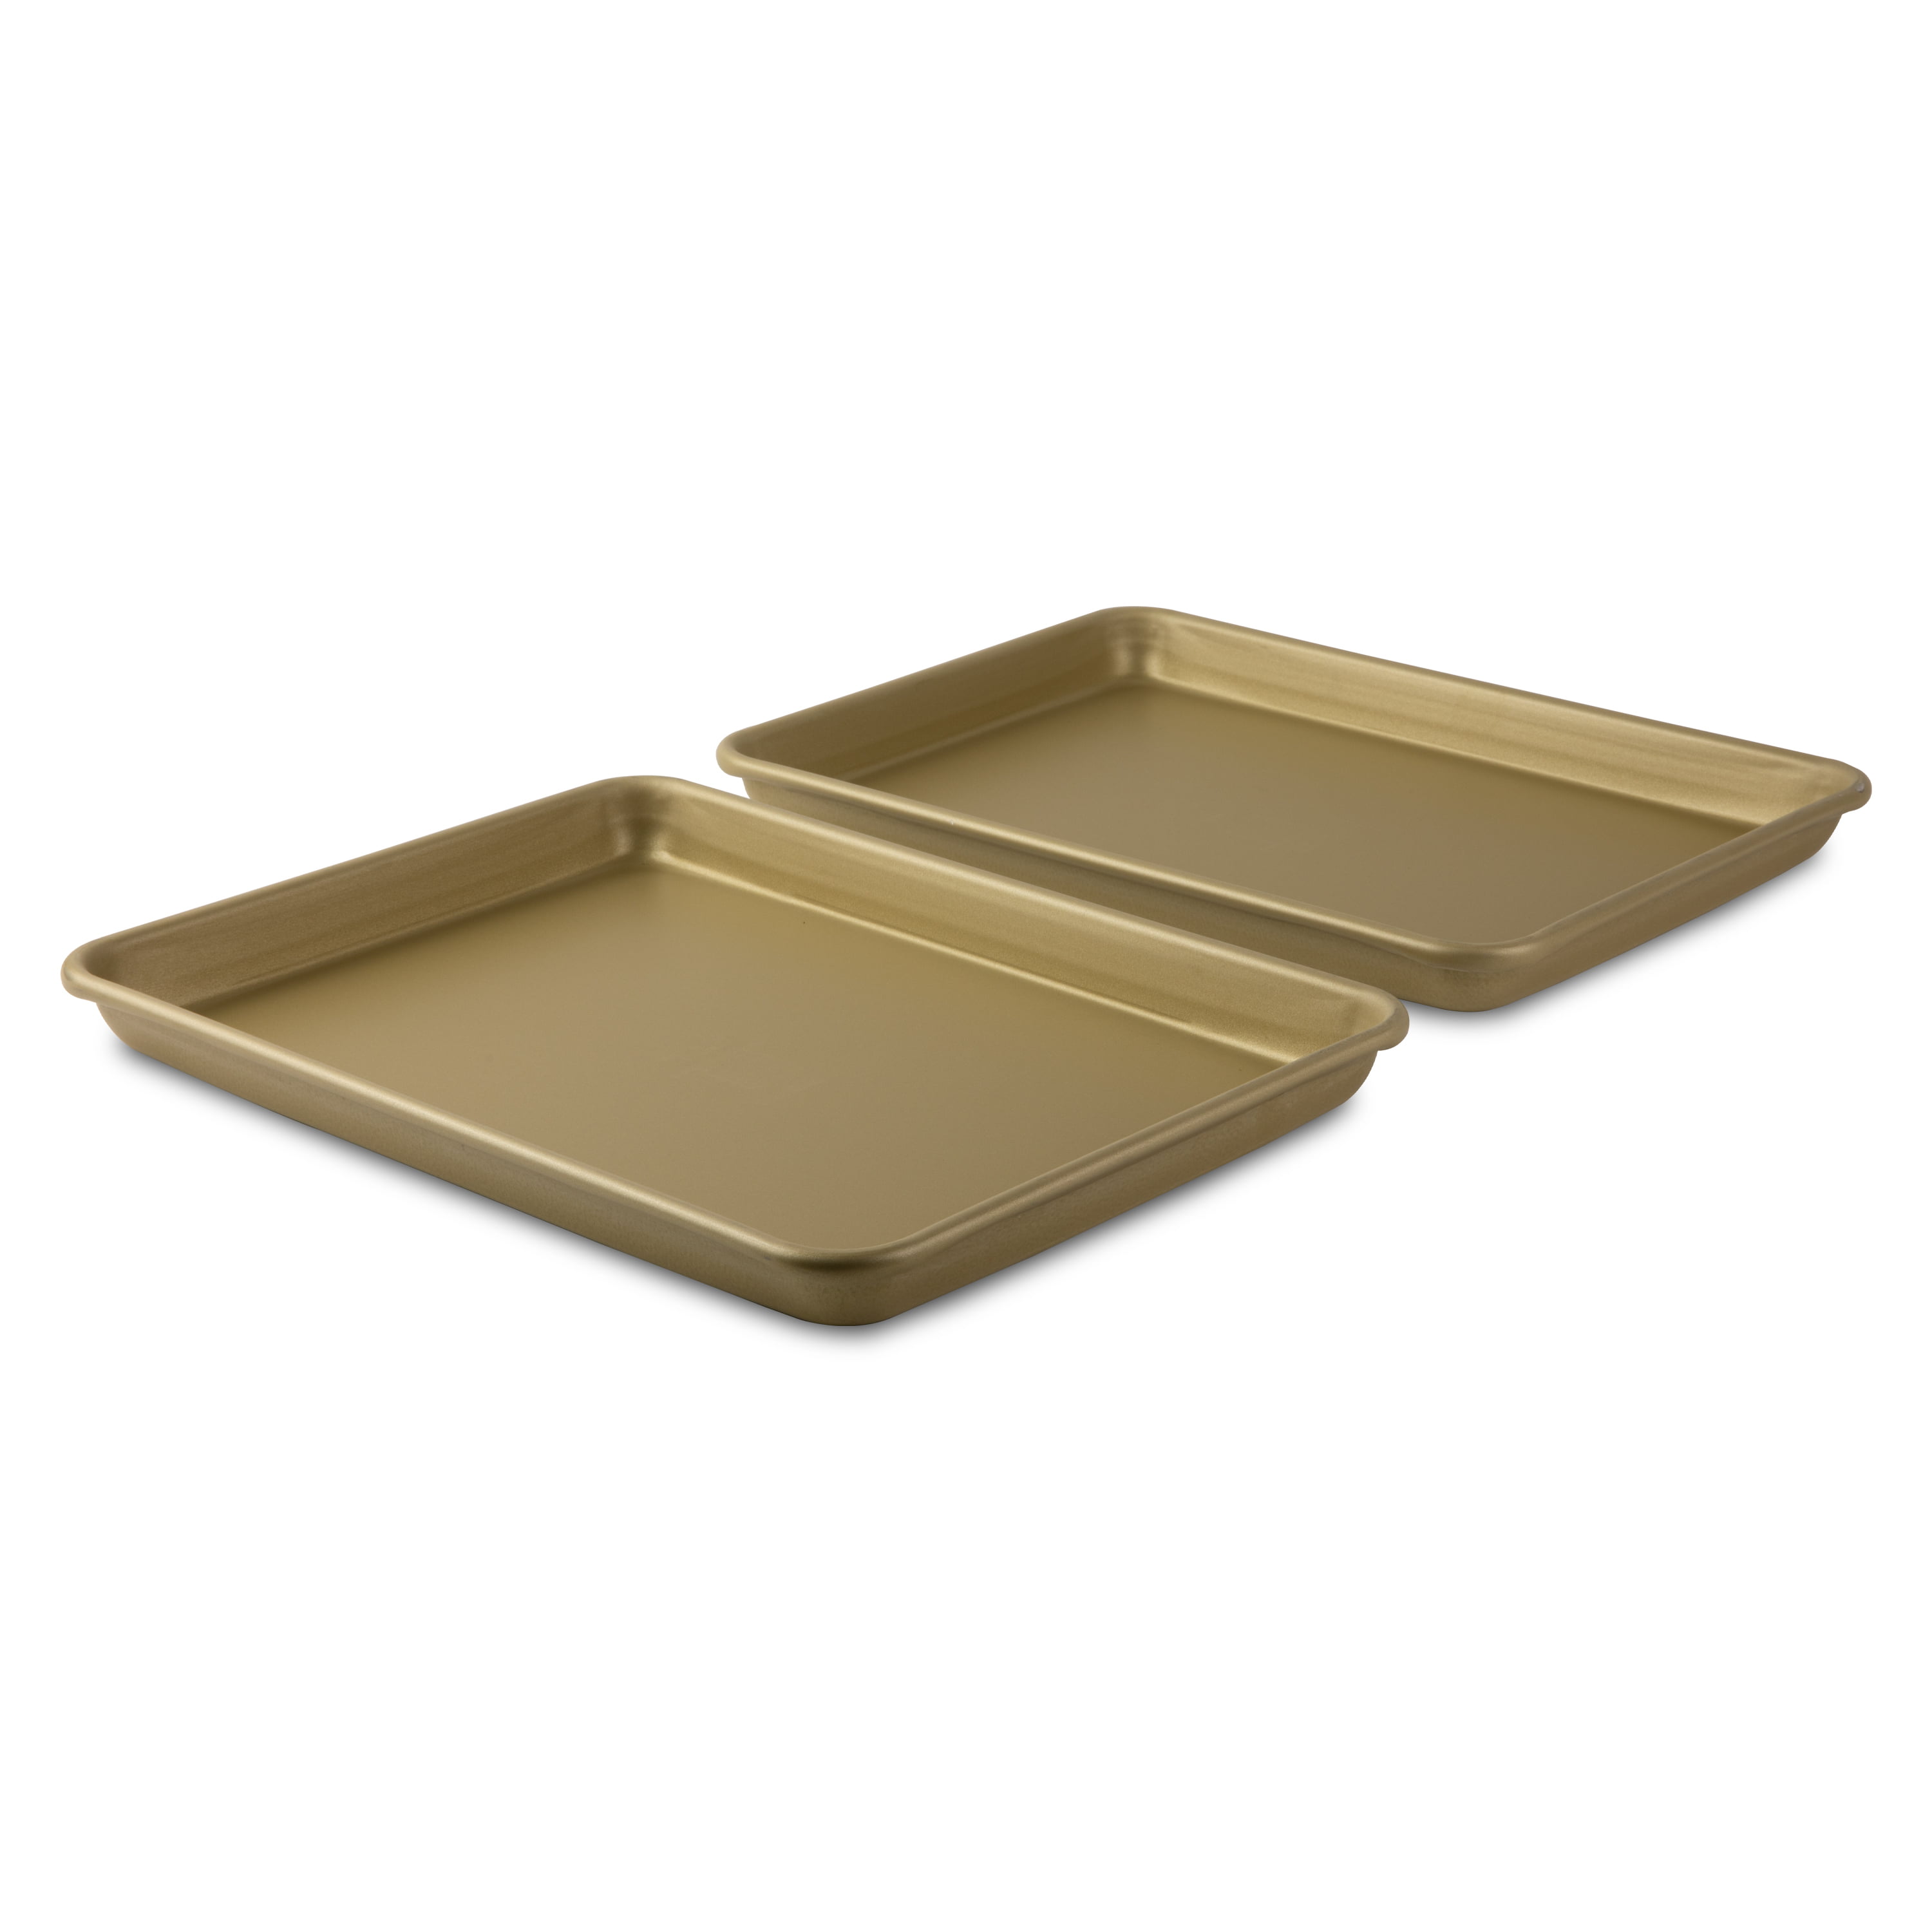 1/4 SIZE ALUMINUM SHEET PAN (2 PACK) » NUCU® Cookware & Bakeware